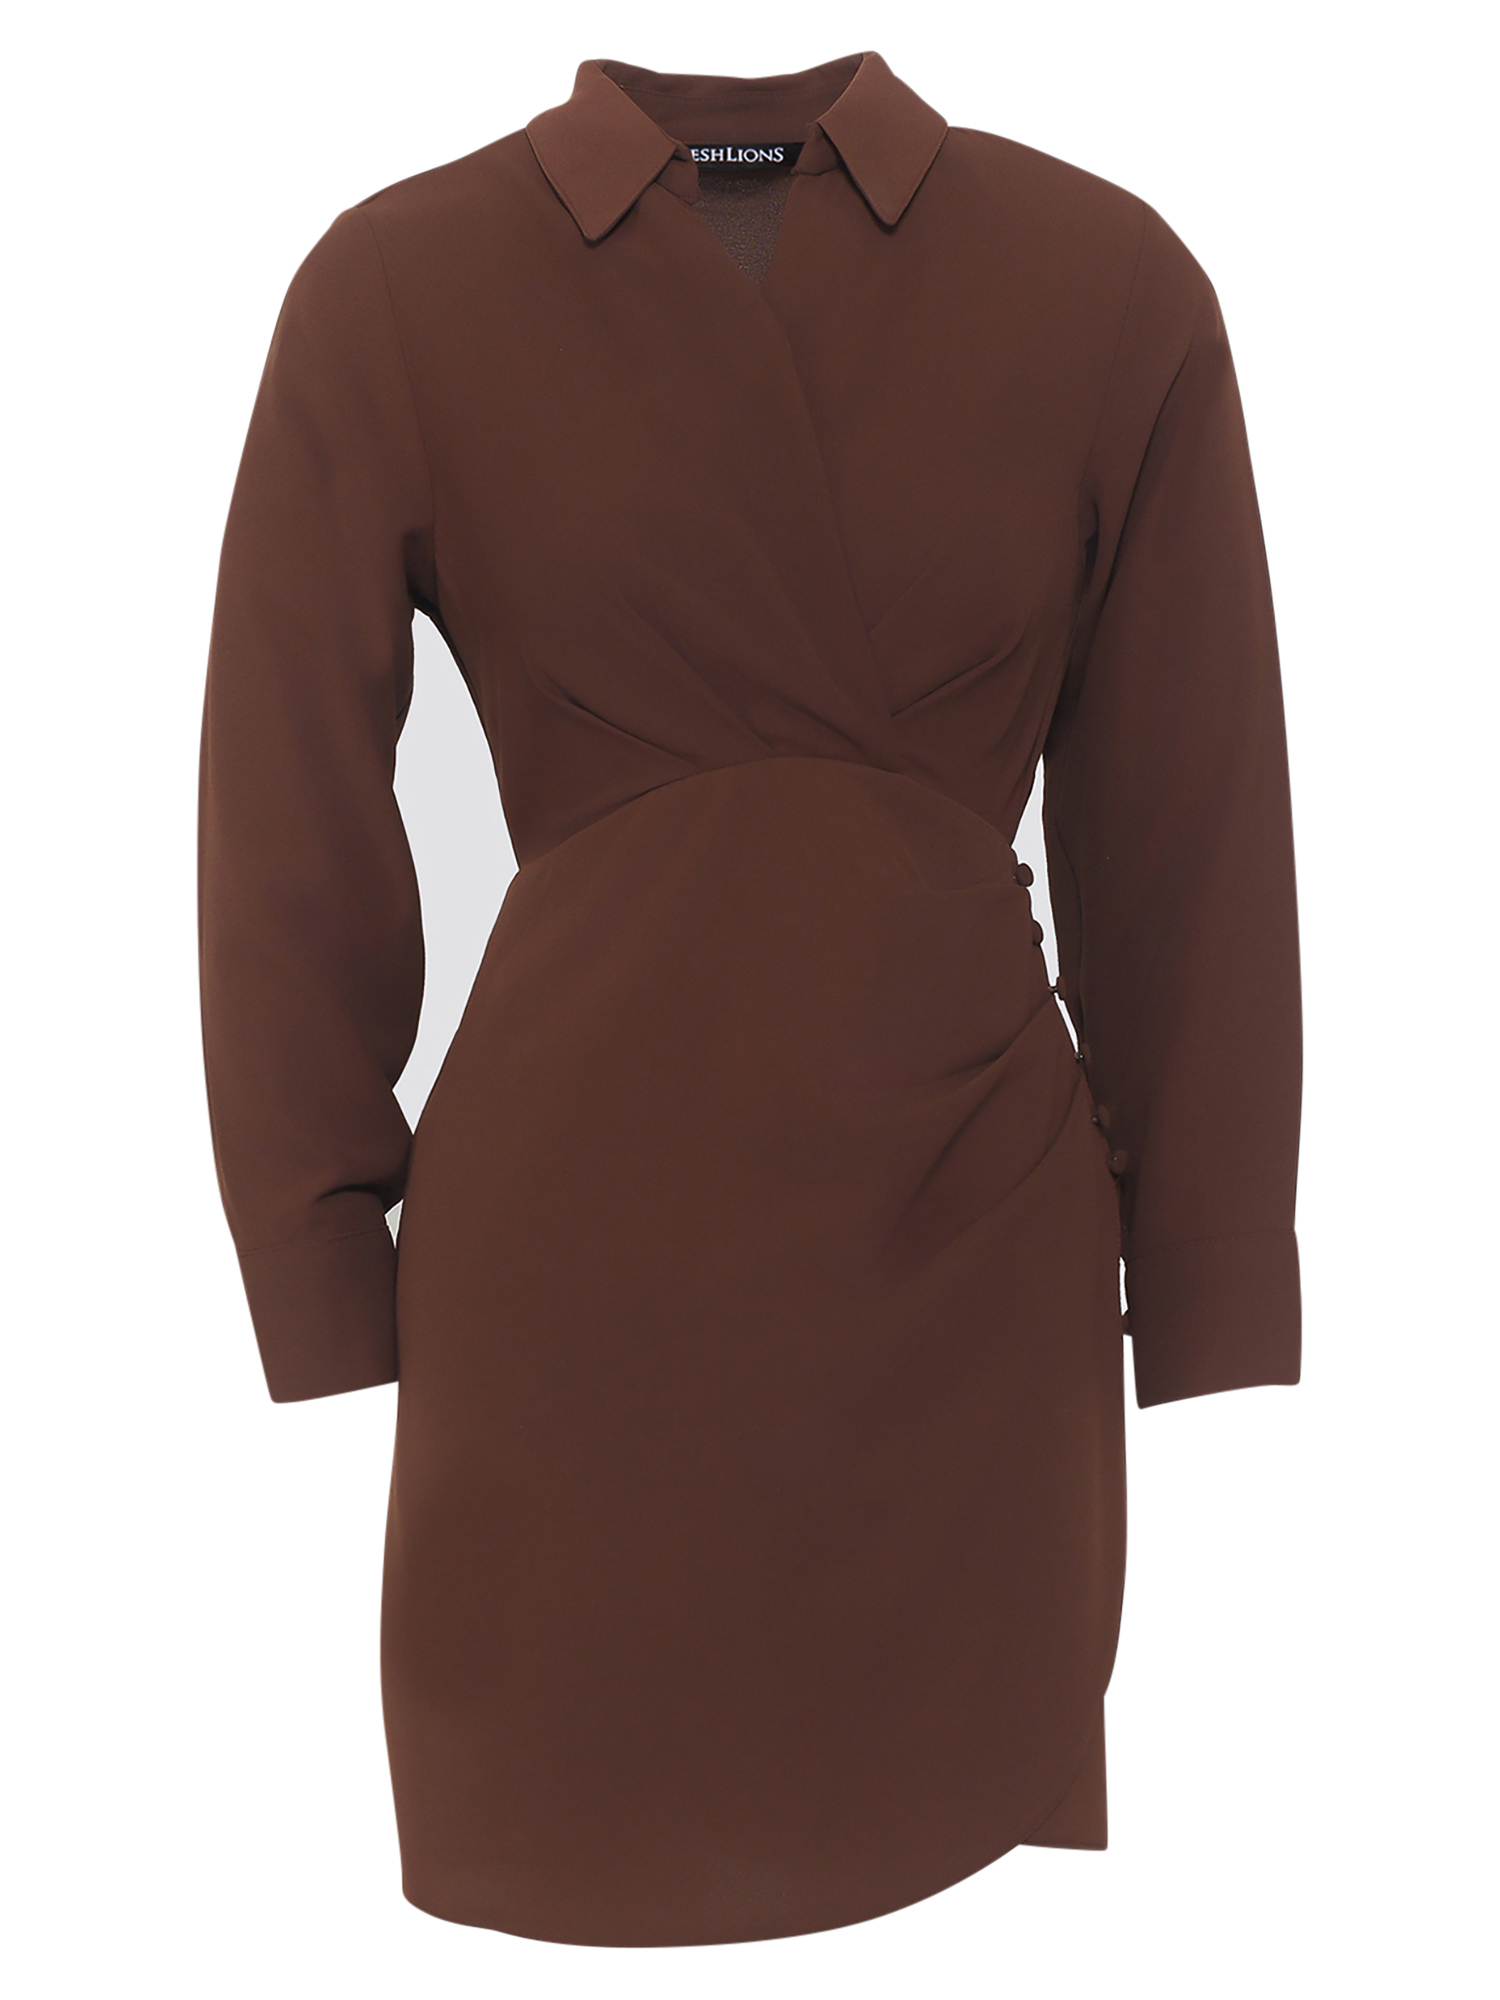 Платье Freshlions Magda, коричневый платье magda 46 размер новое